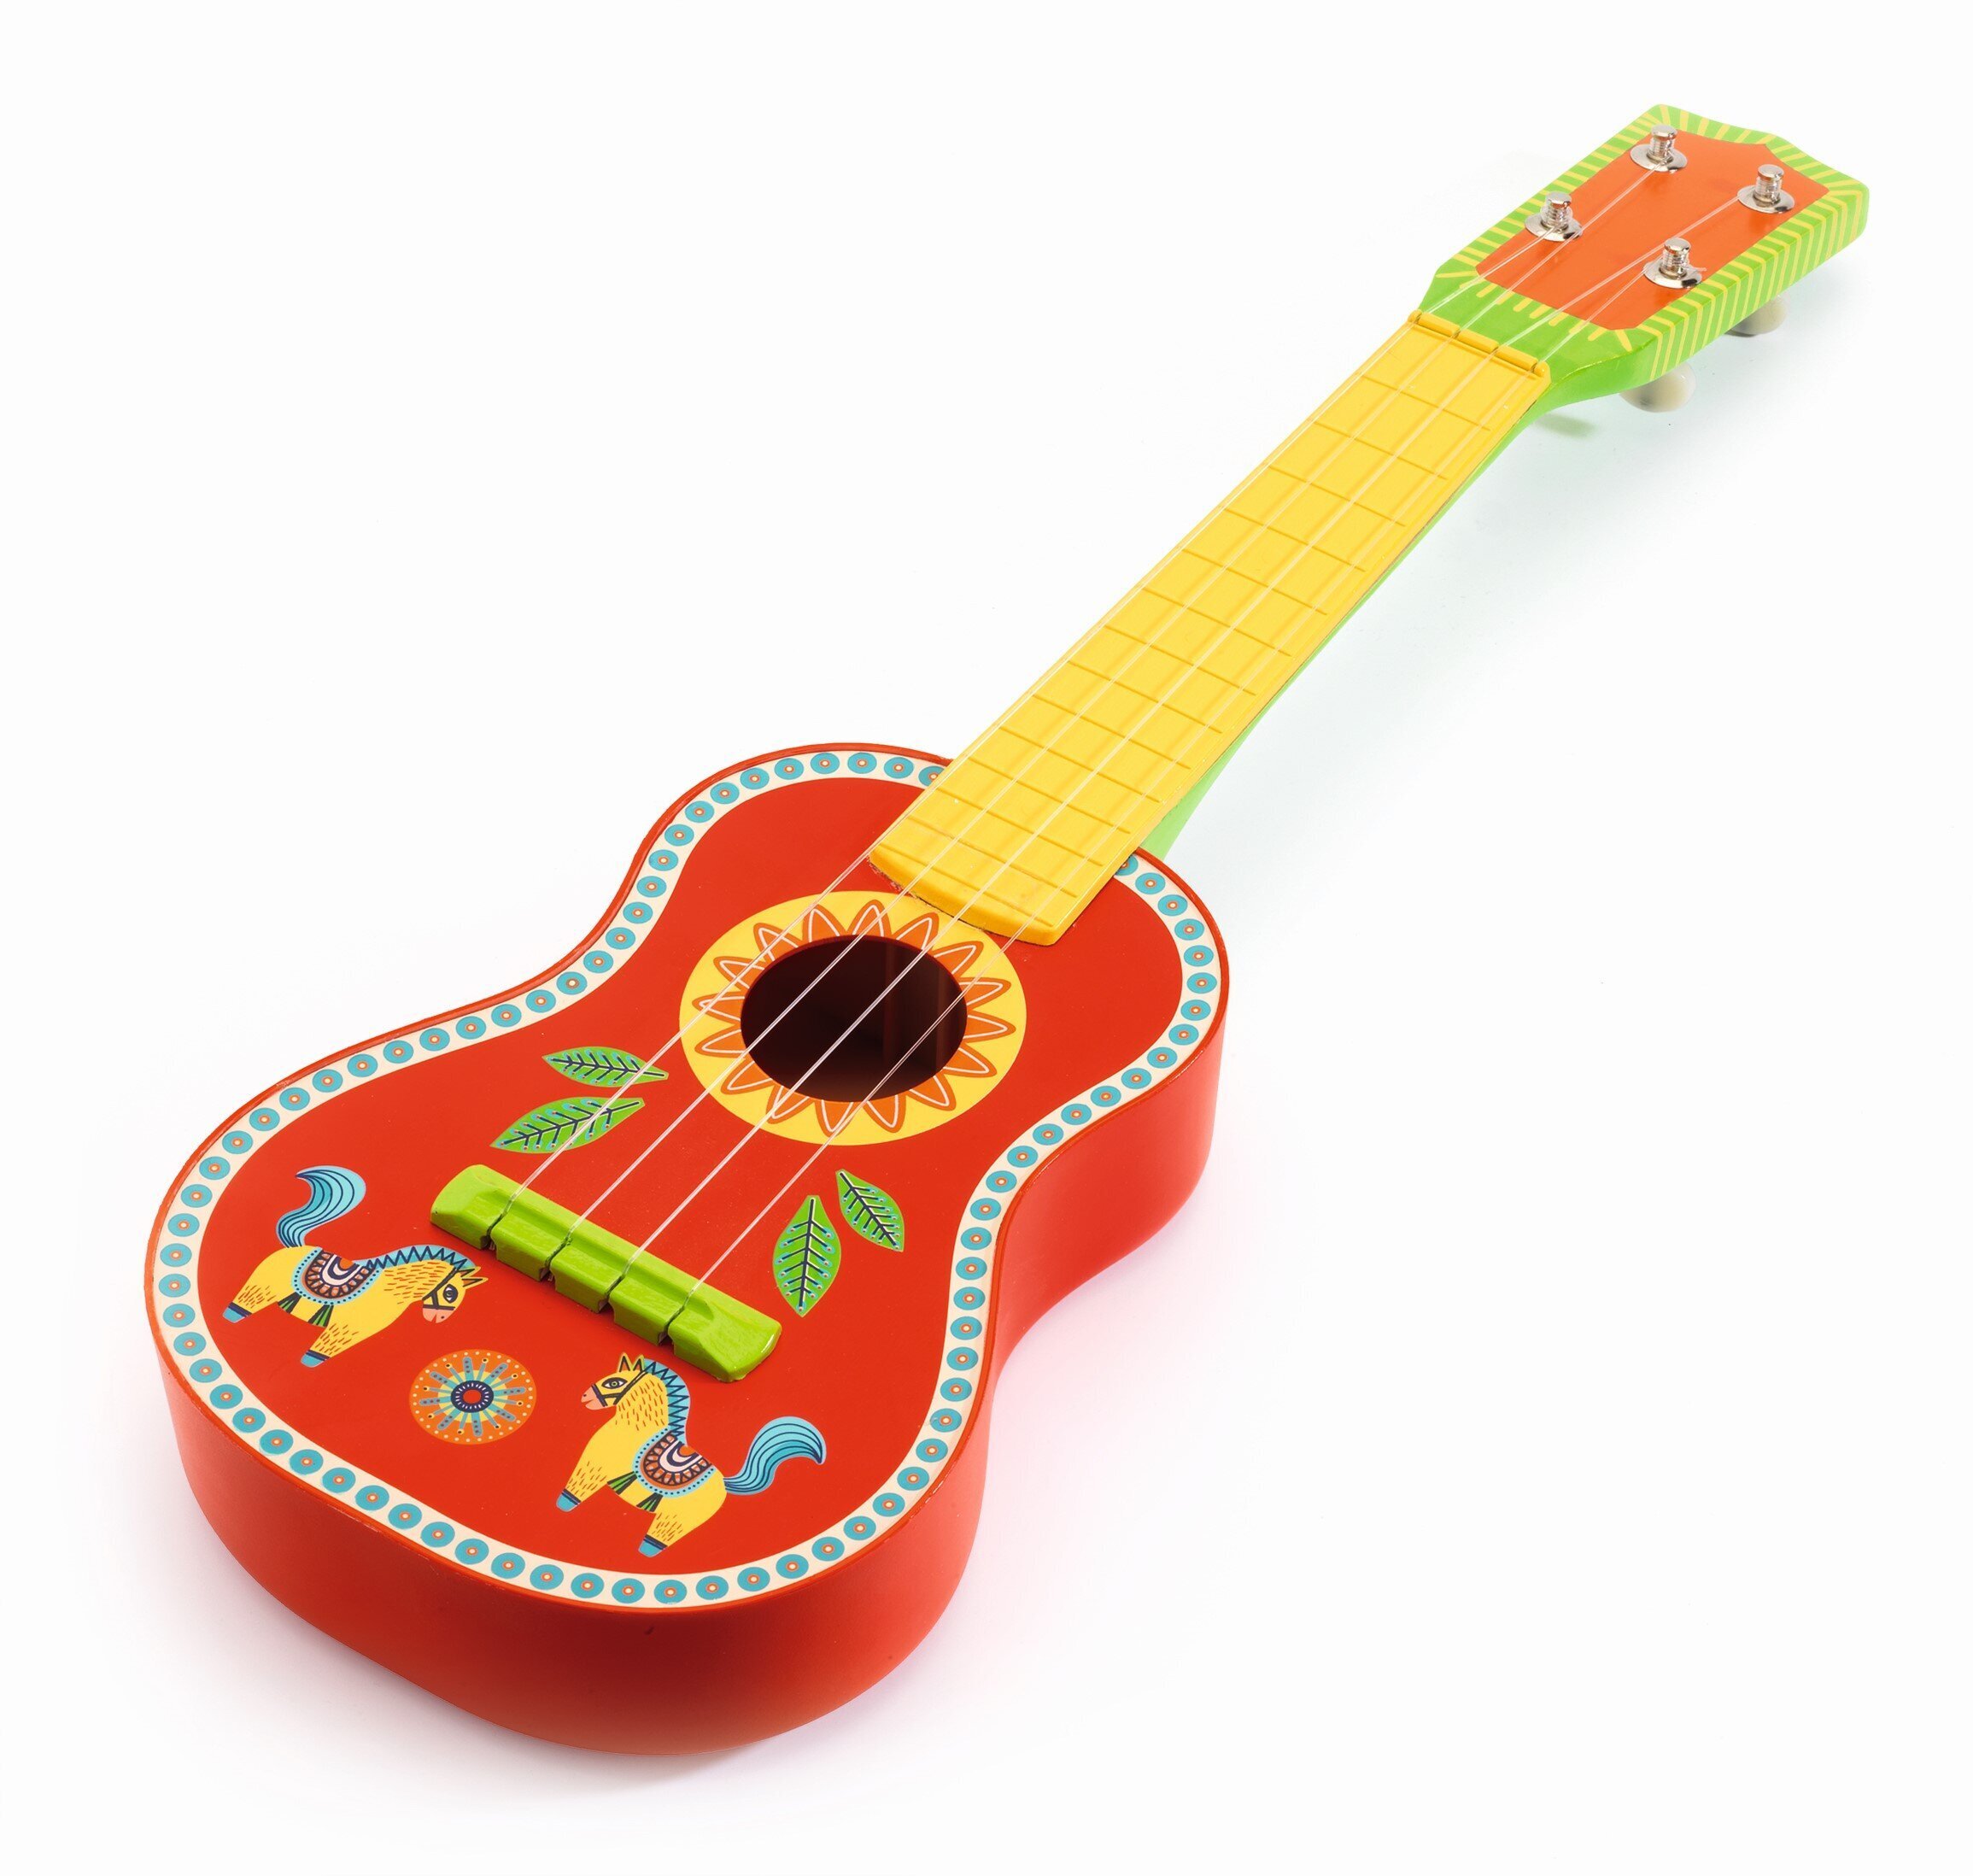 Купить Гитару Для Ребенка В Спб